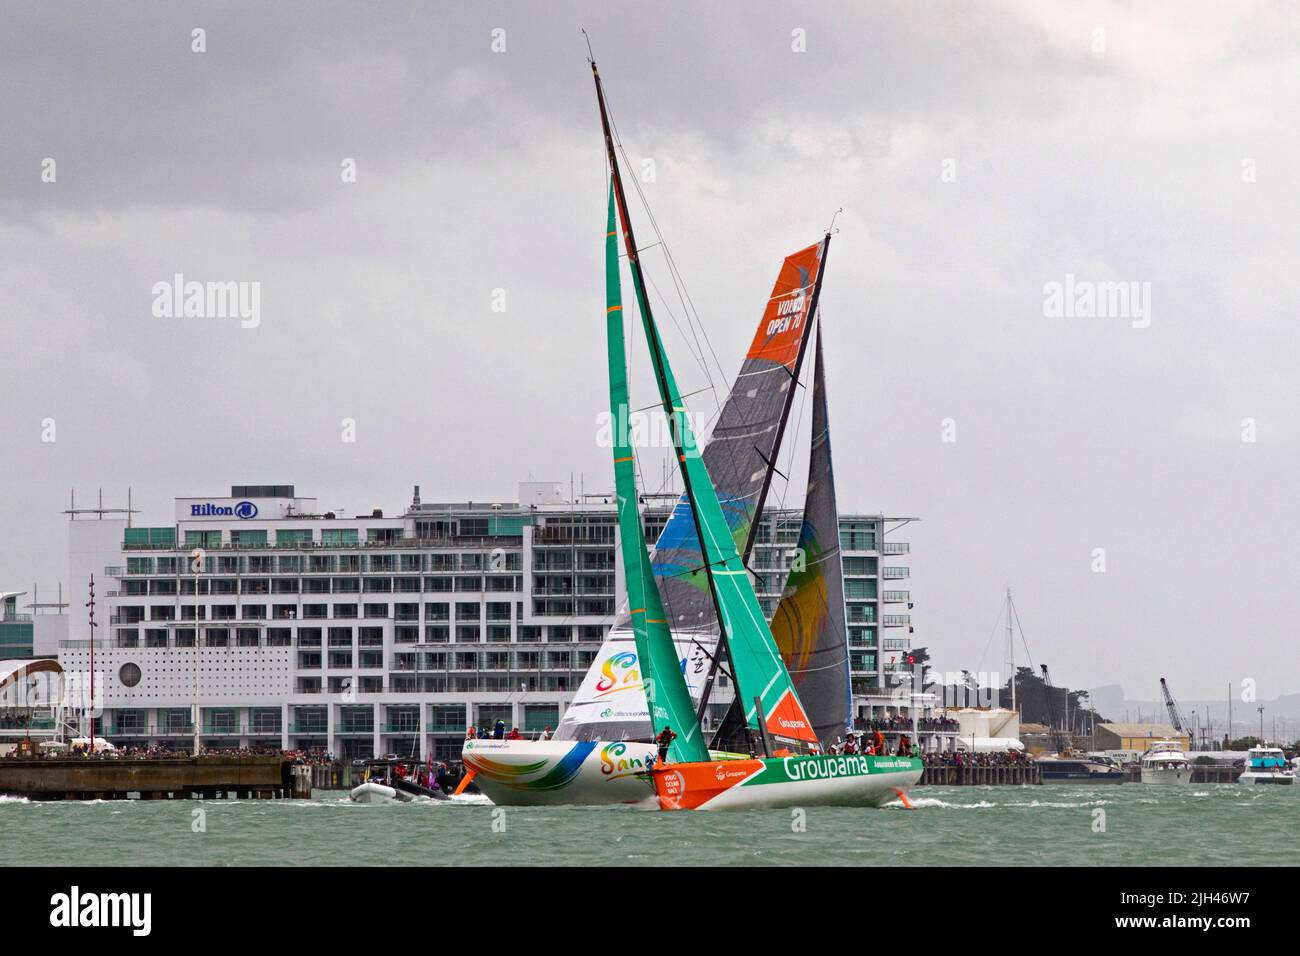 El equipo Sanya, la izquierda y el equipo de navegación de Groupama compiten en la carrera en el puerto como parte de la Volvo Ocean Race, Auckland, Nueva Zelanda, Foto de stock